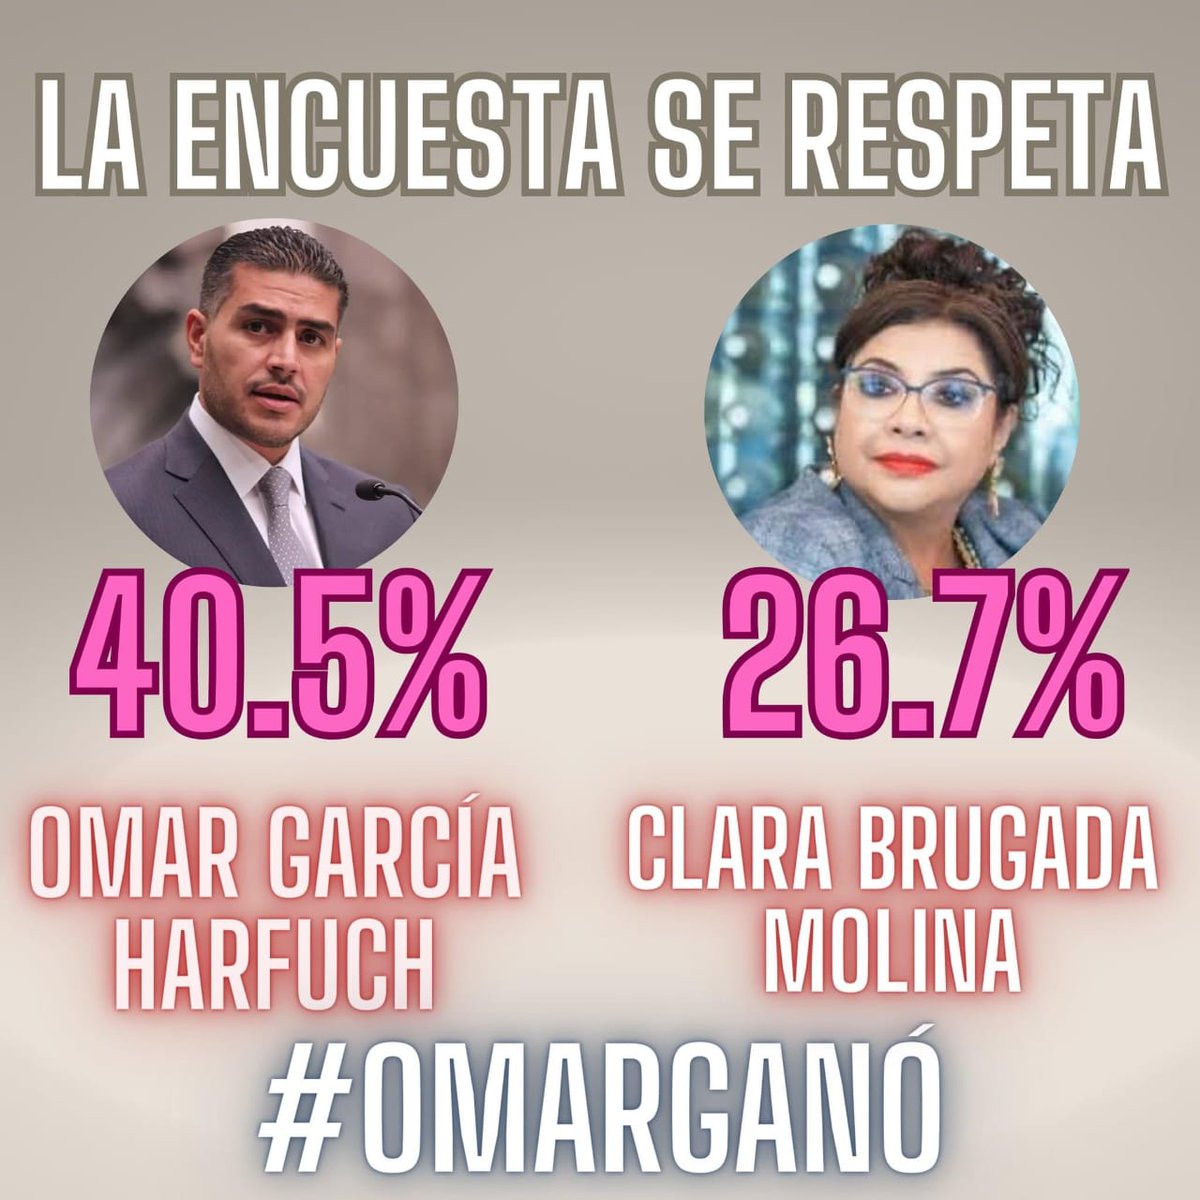 La esperanza sigue #OmarGanó por más de 14 puntos las encuestas. #LAENCUESTASERESPETA #ElBuenoEsHarfuch #EsOmar #OmarGanó14Puntos